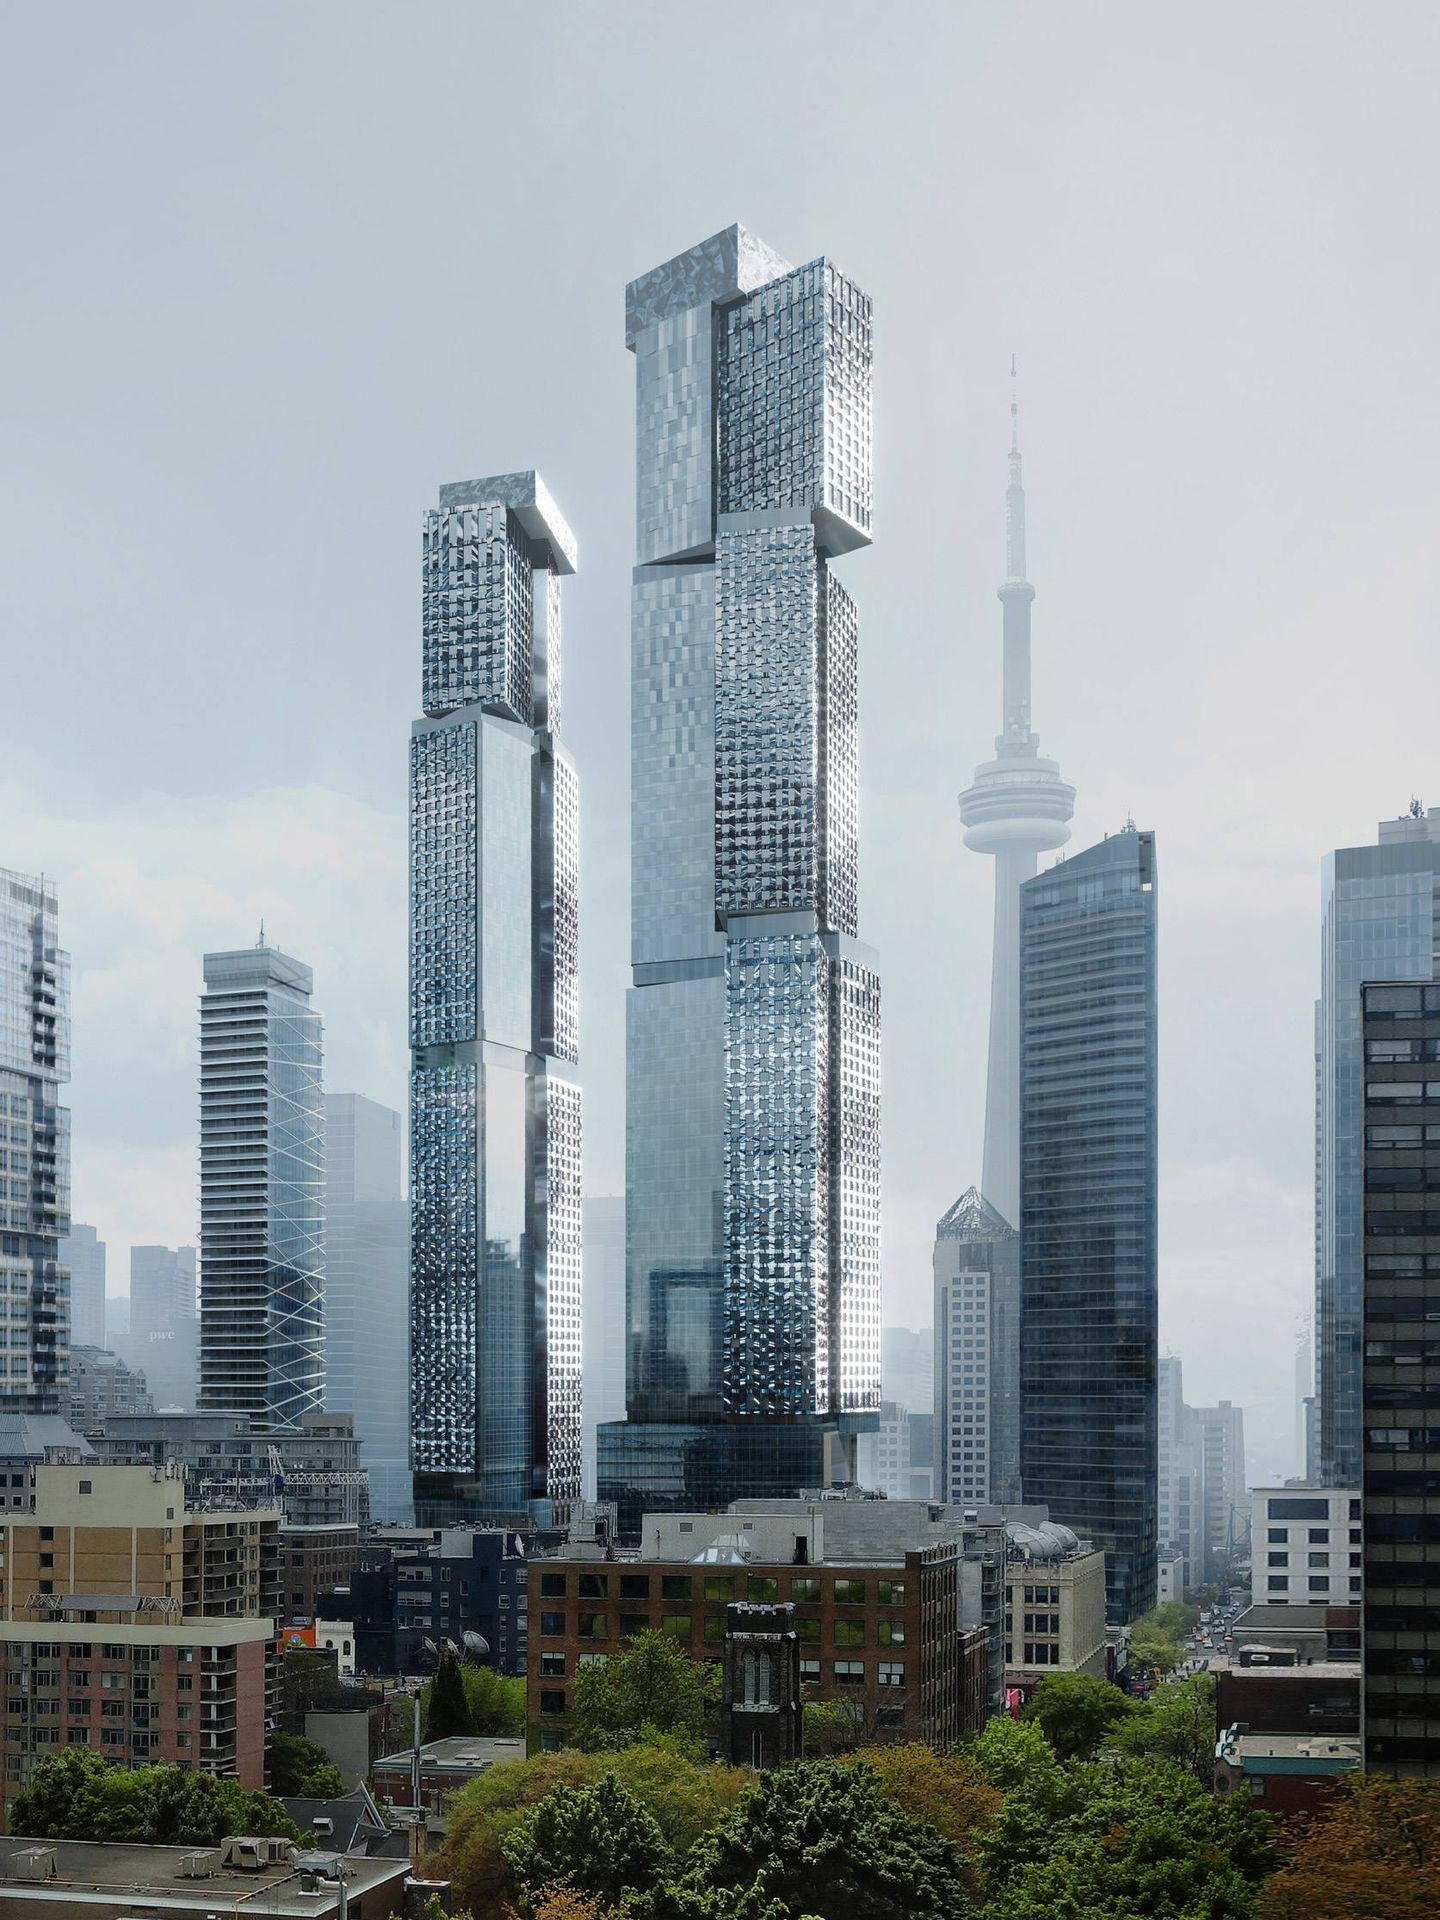 El rascacielos de Gehry en Toronto (Frank Gehry)